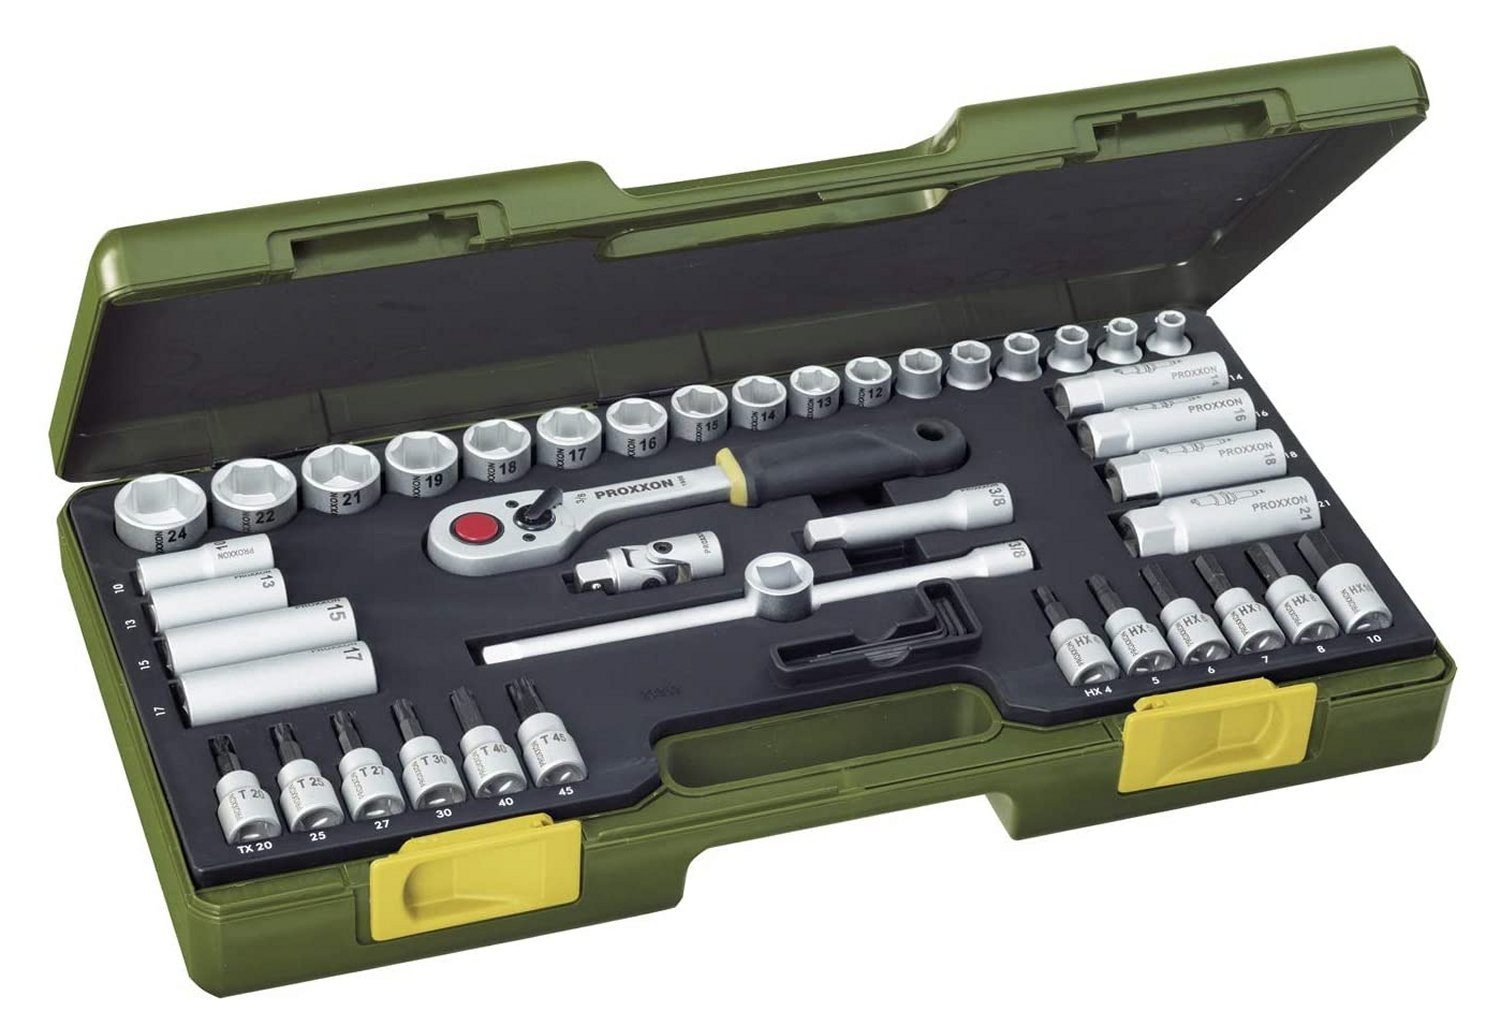 PROXXON INDUSTRIAL Werkzeugset PROXXON 23282 Nusskasten Knarrenkasten Antrieb 10mm (3/8) 47 teilig, (47-St), inkl. Aufbewahrungskoffer